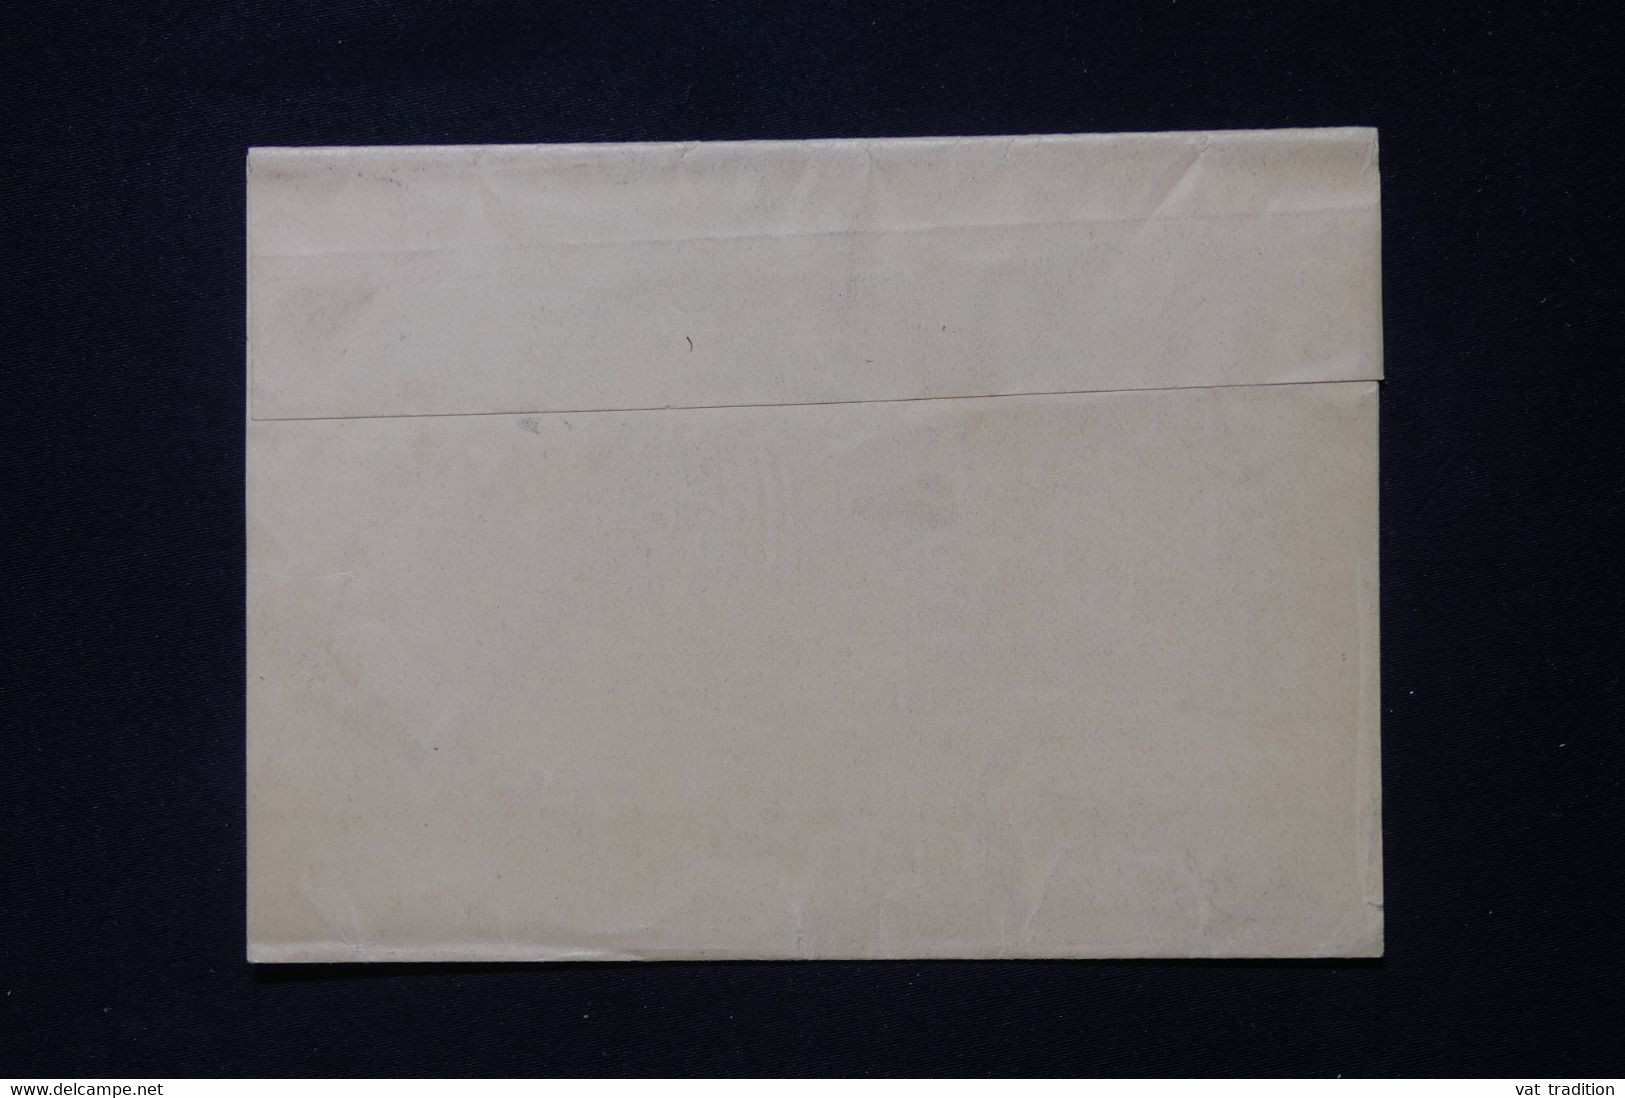 NOUVELLE ZÉLANDE - Entier Postal ( Pour Imprimés ) Pour La France  - L 88328 - Postwaardestukken